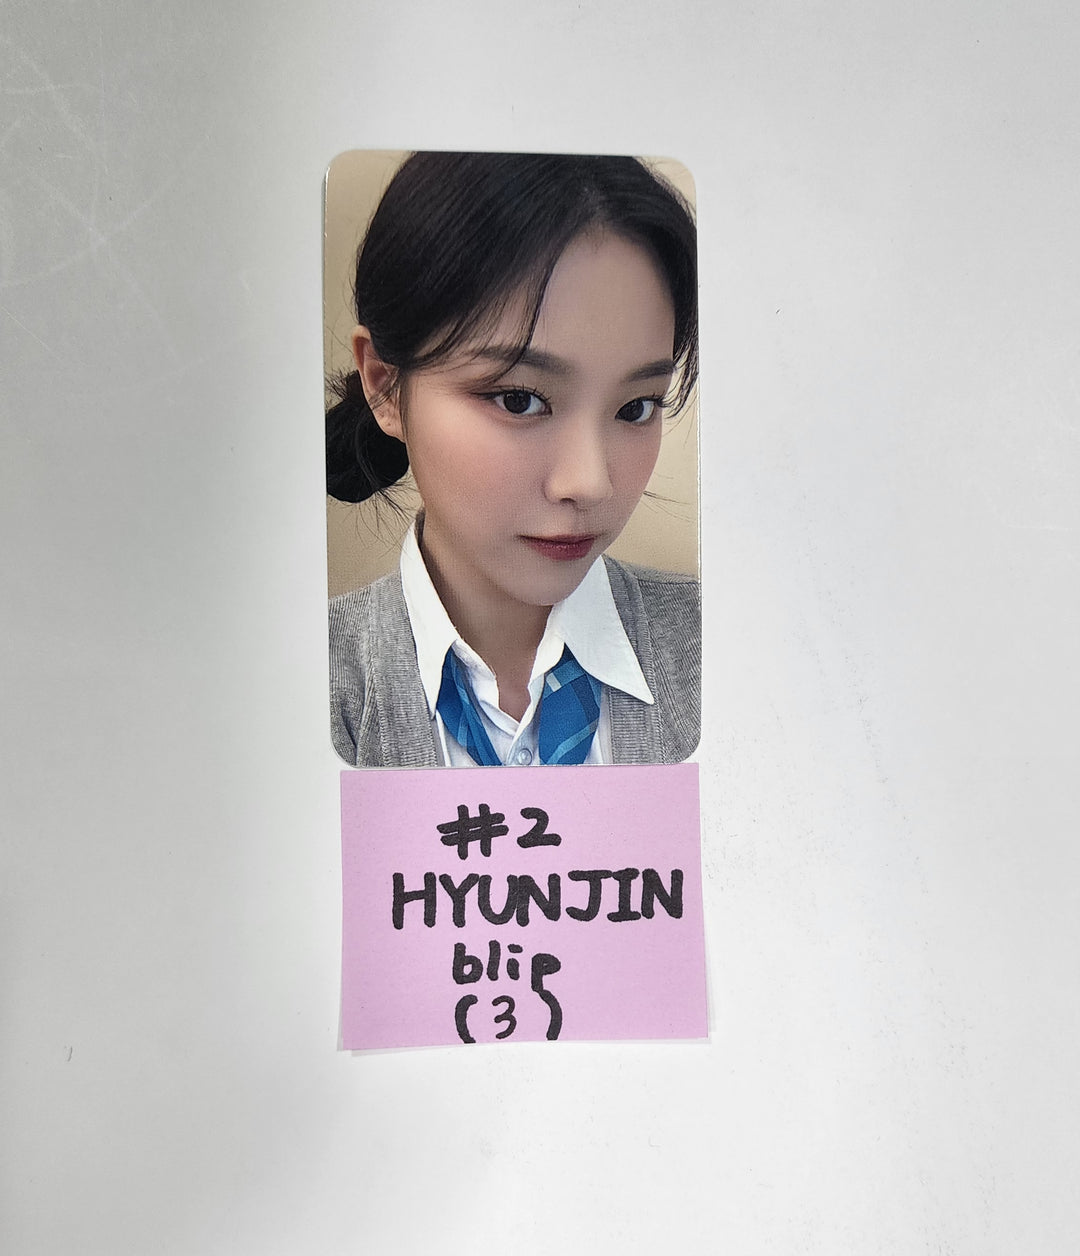 이달의 소녀 "Flip That" 여름 스페셜 미니앨범 - BLIP 예약판매 베넨핏 포토카드 2차